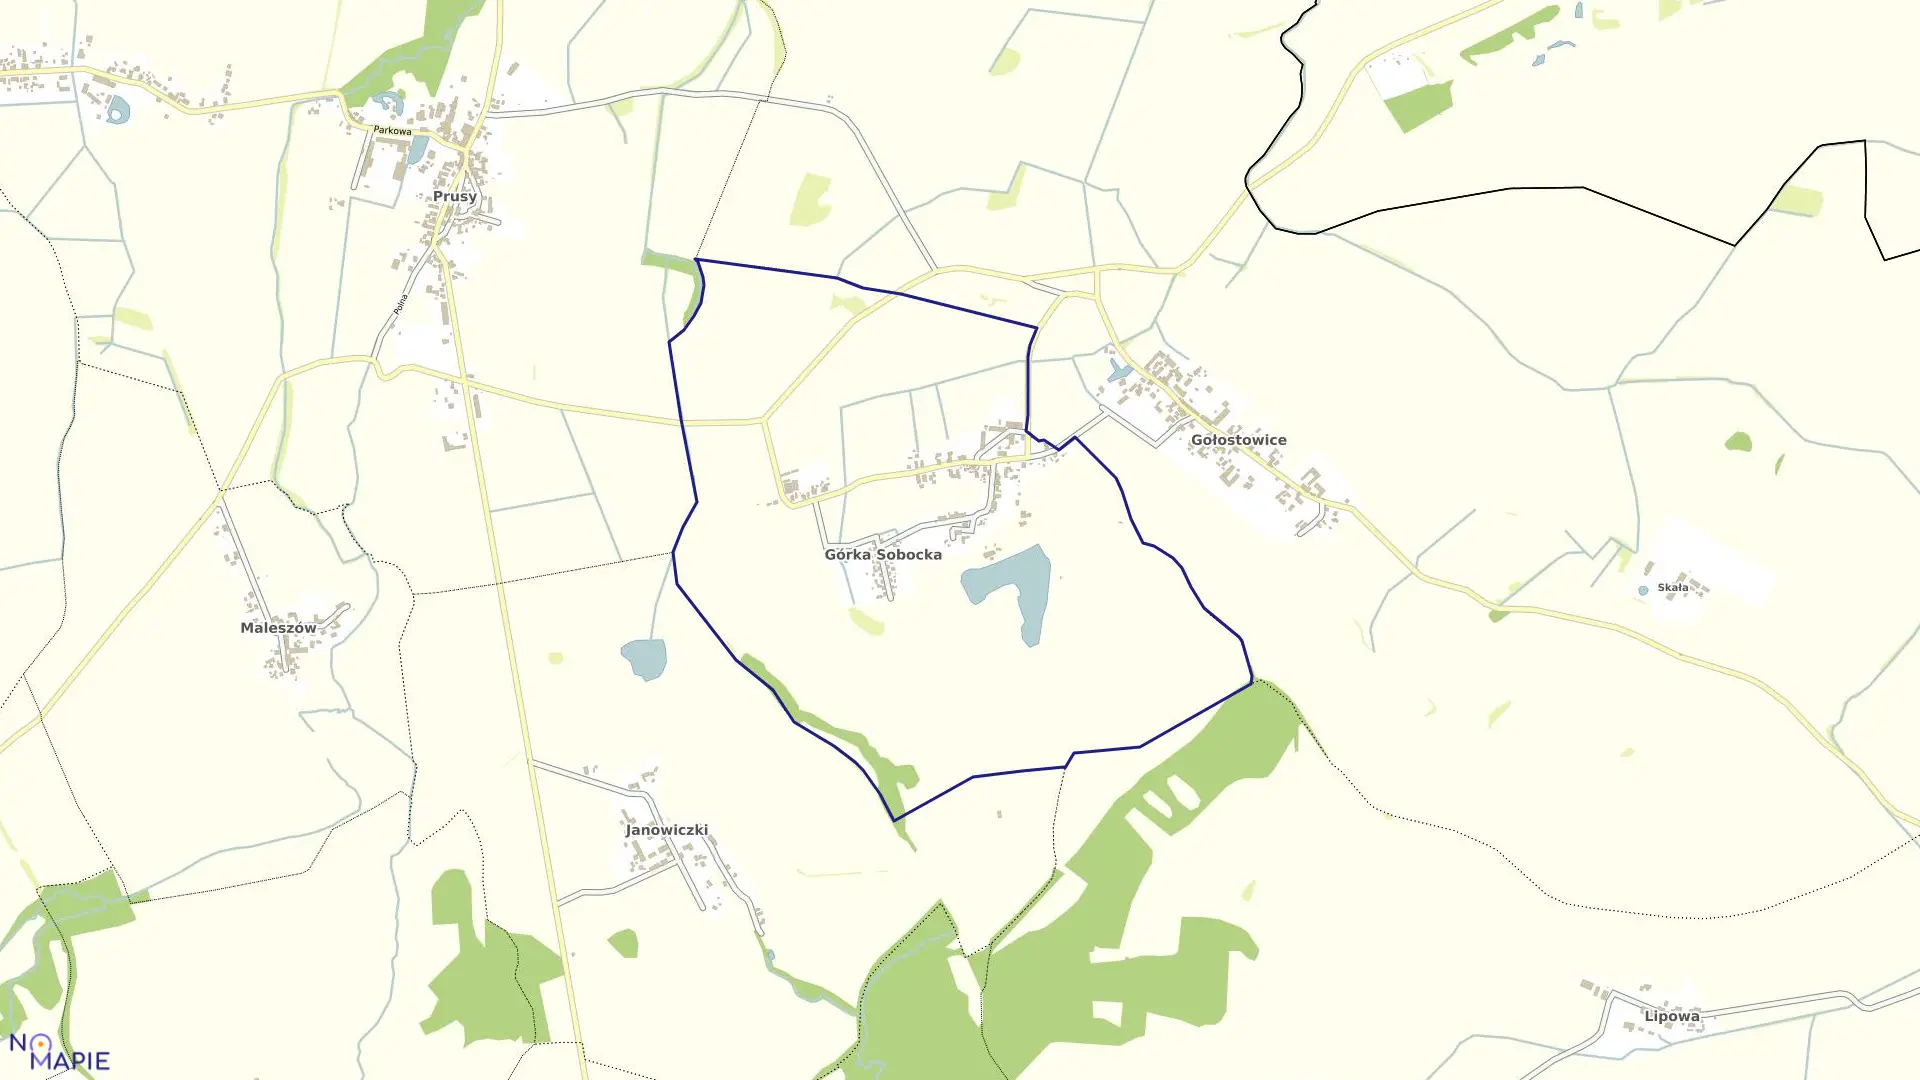 Mapa obrębu GÓRKA SOBOCKA w gminie Kondratowice